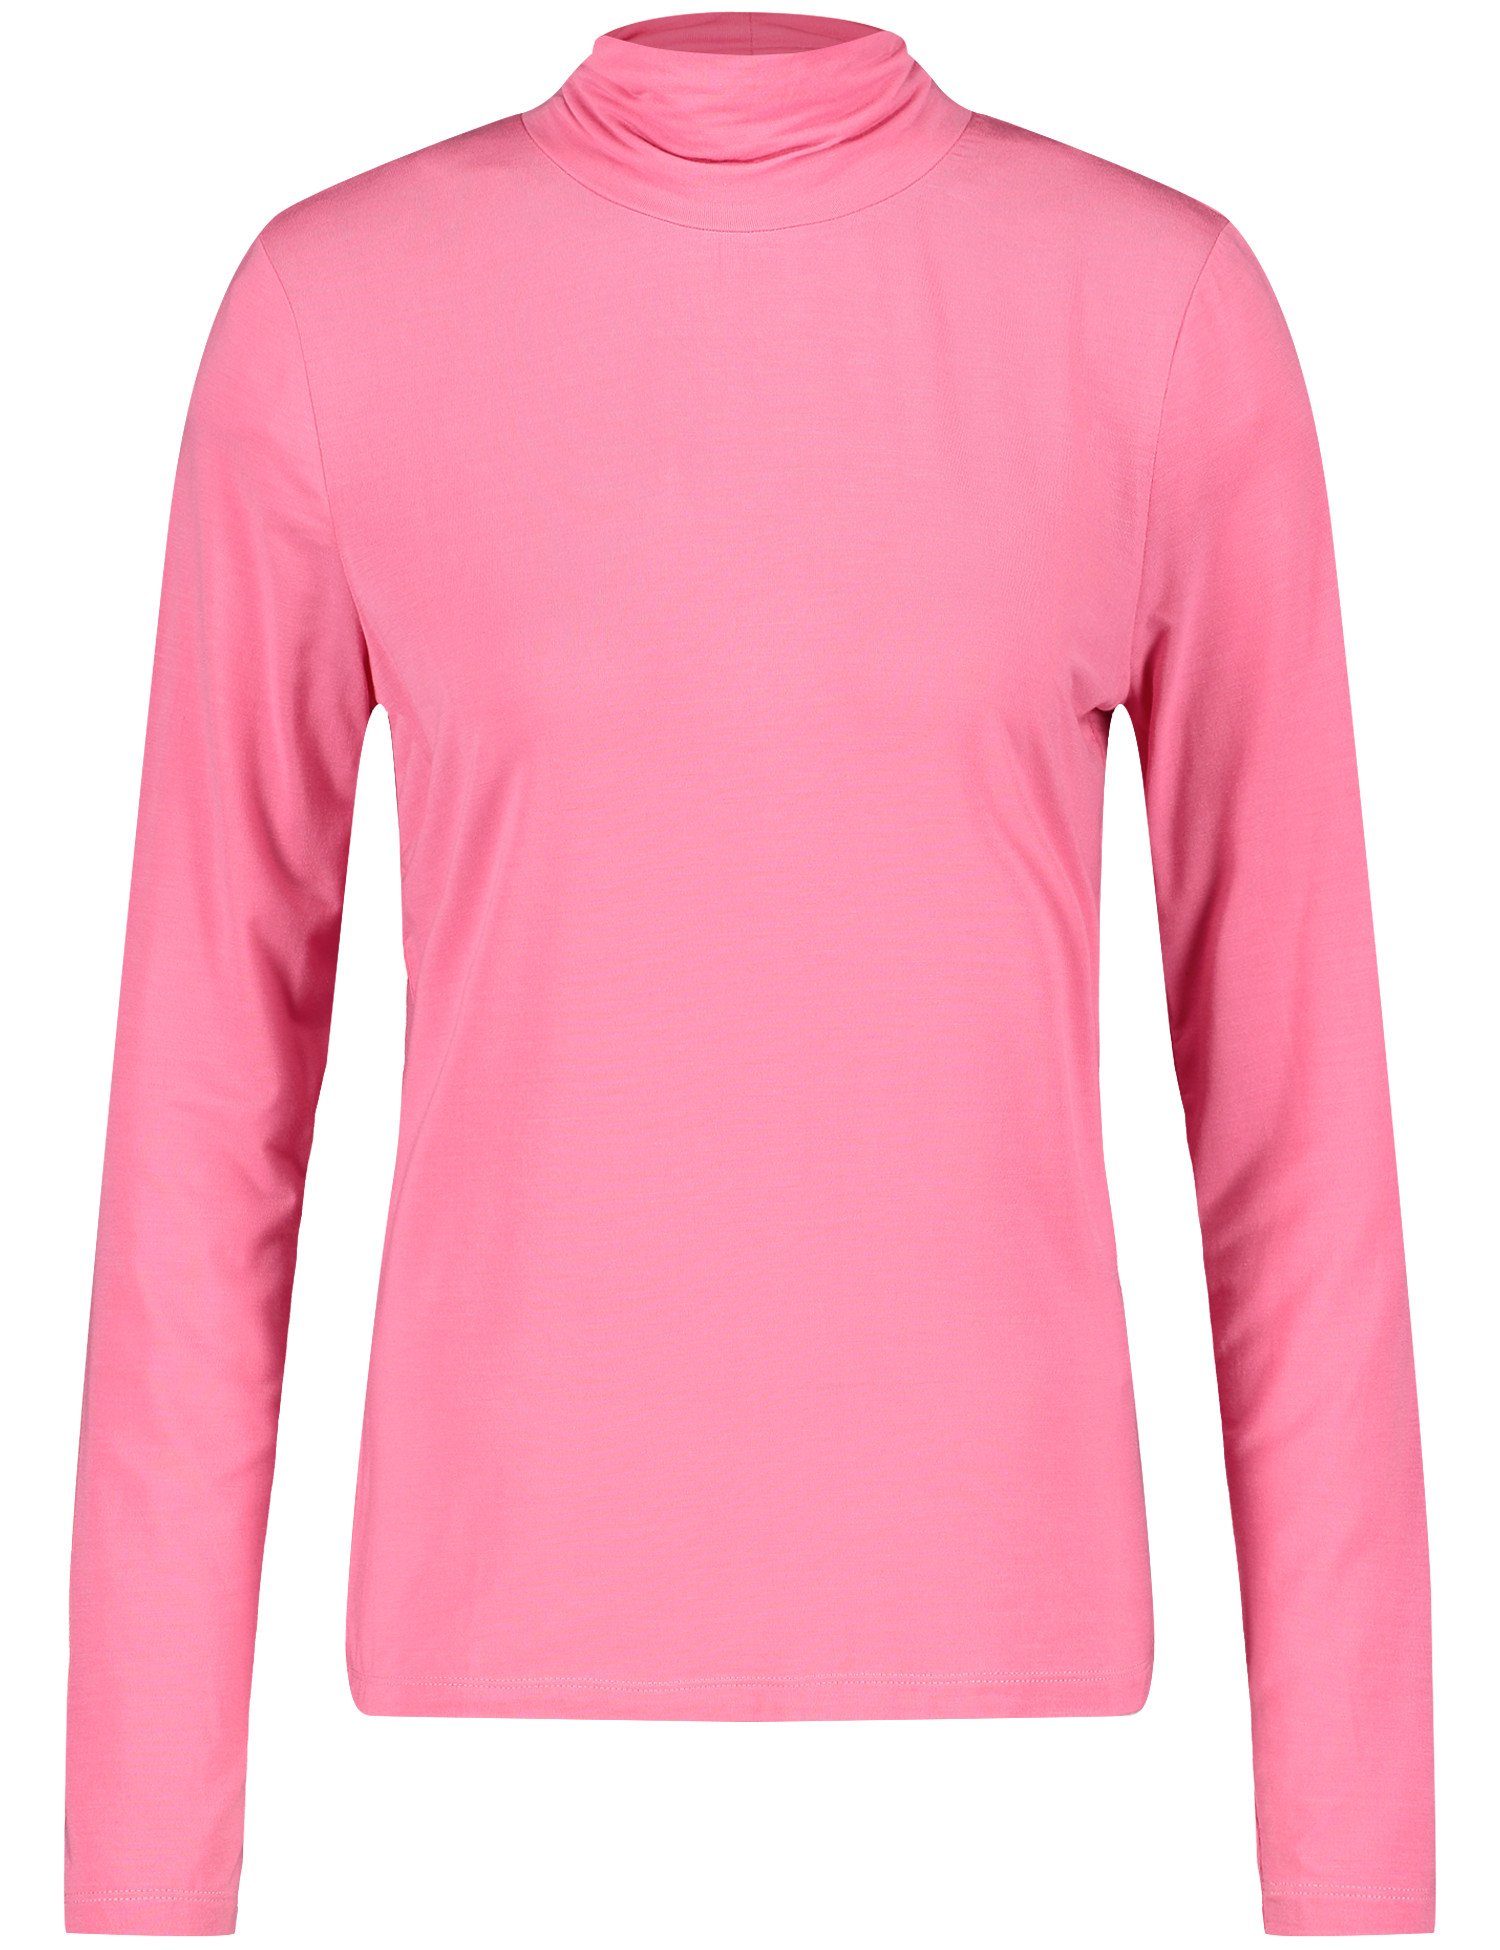 GERRY WEBER T-Shirt 30894 ROSE PINK